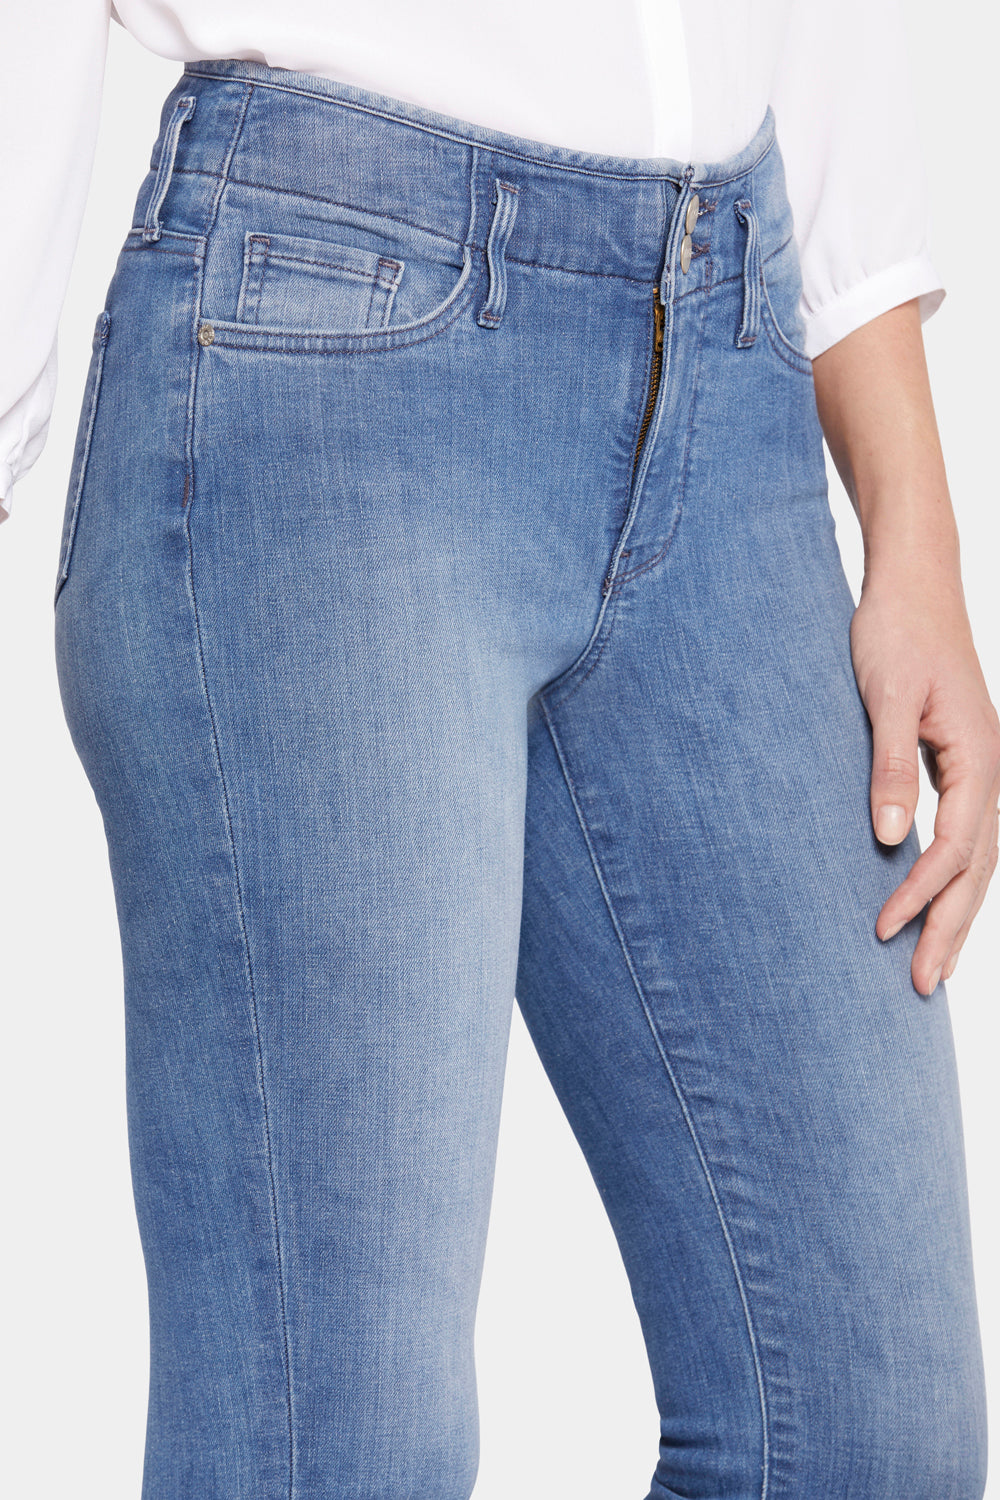 NYDJ Chloe Capri Jeans In Petite With Cuffs - Stargazer